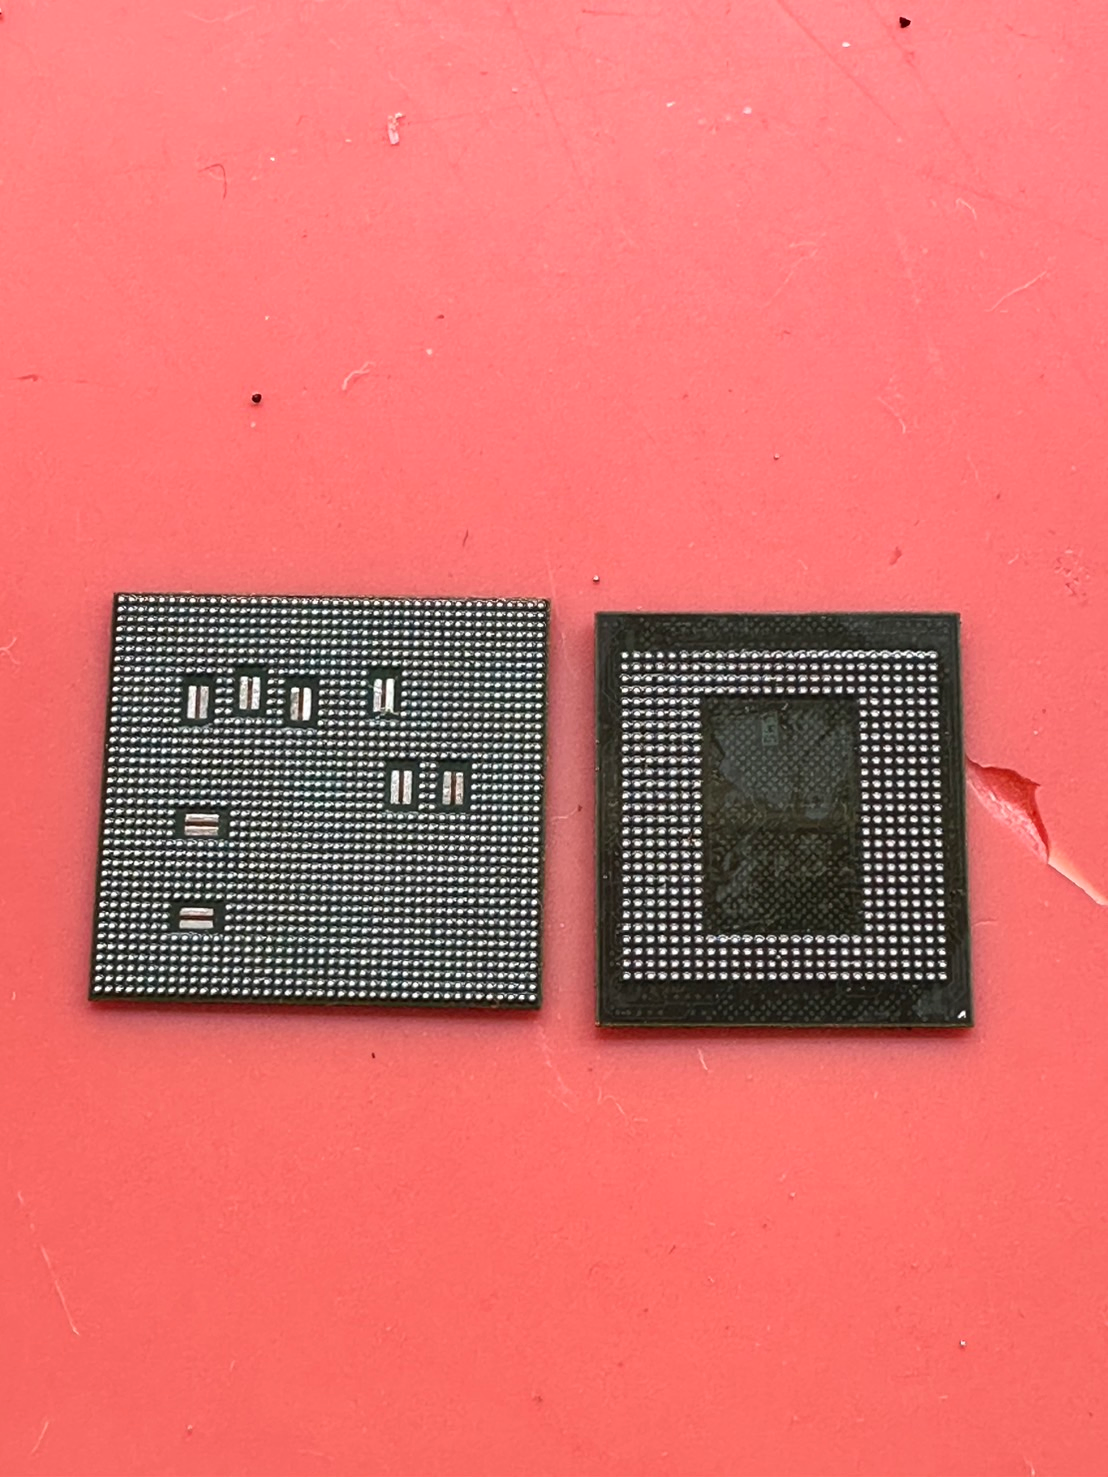 植錫後的CPU(左)與ROM(右)